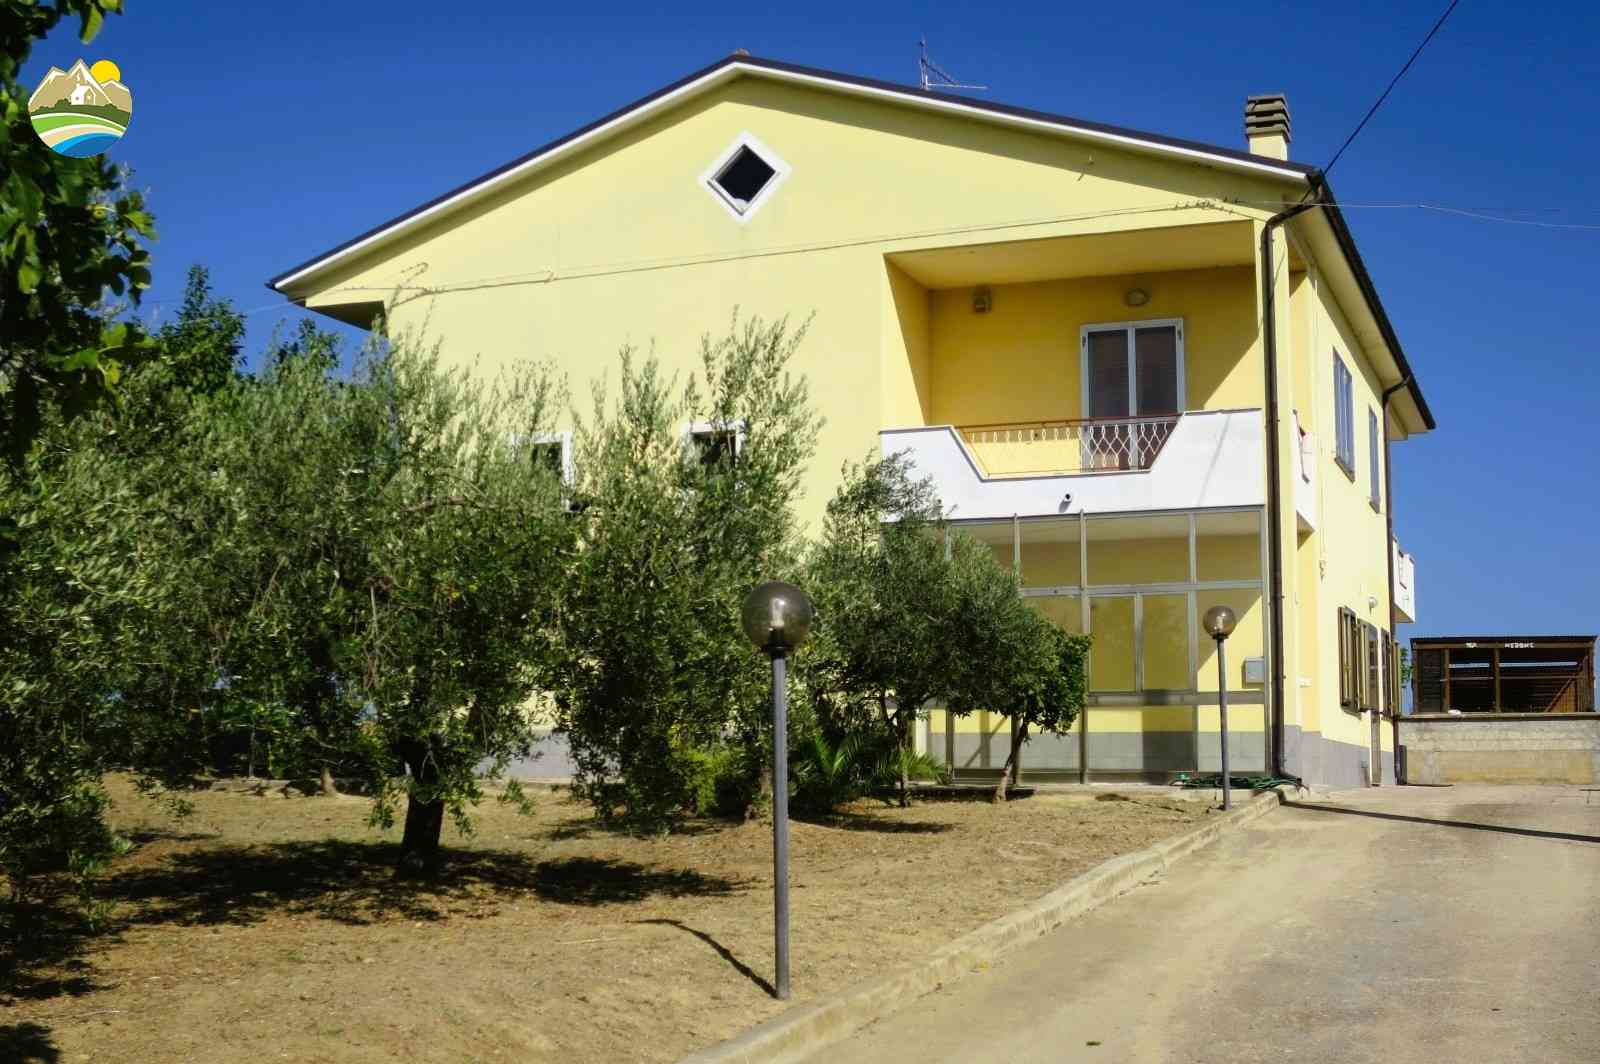 Casa di campagna Casa di campagna in vendita Montefino (TE), Casa Fiorella - Montefino - EUR 197.607 570